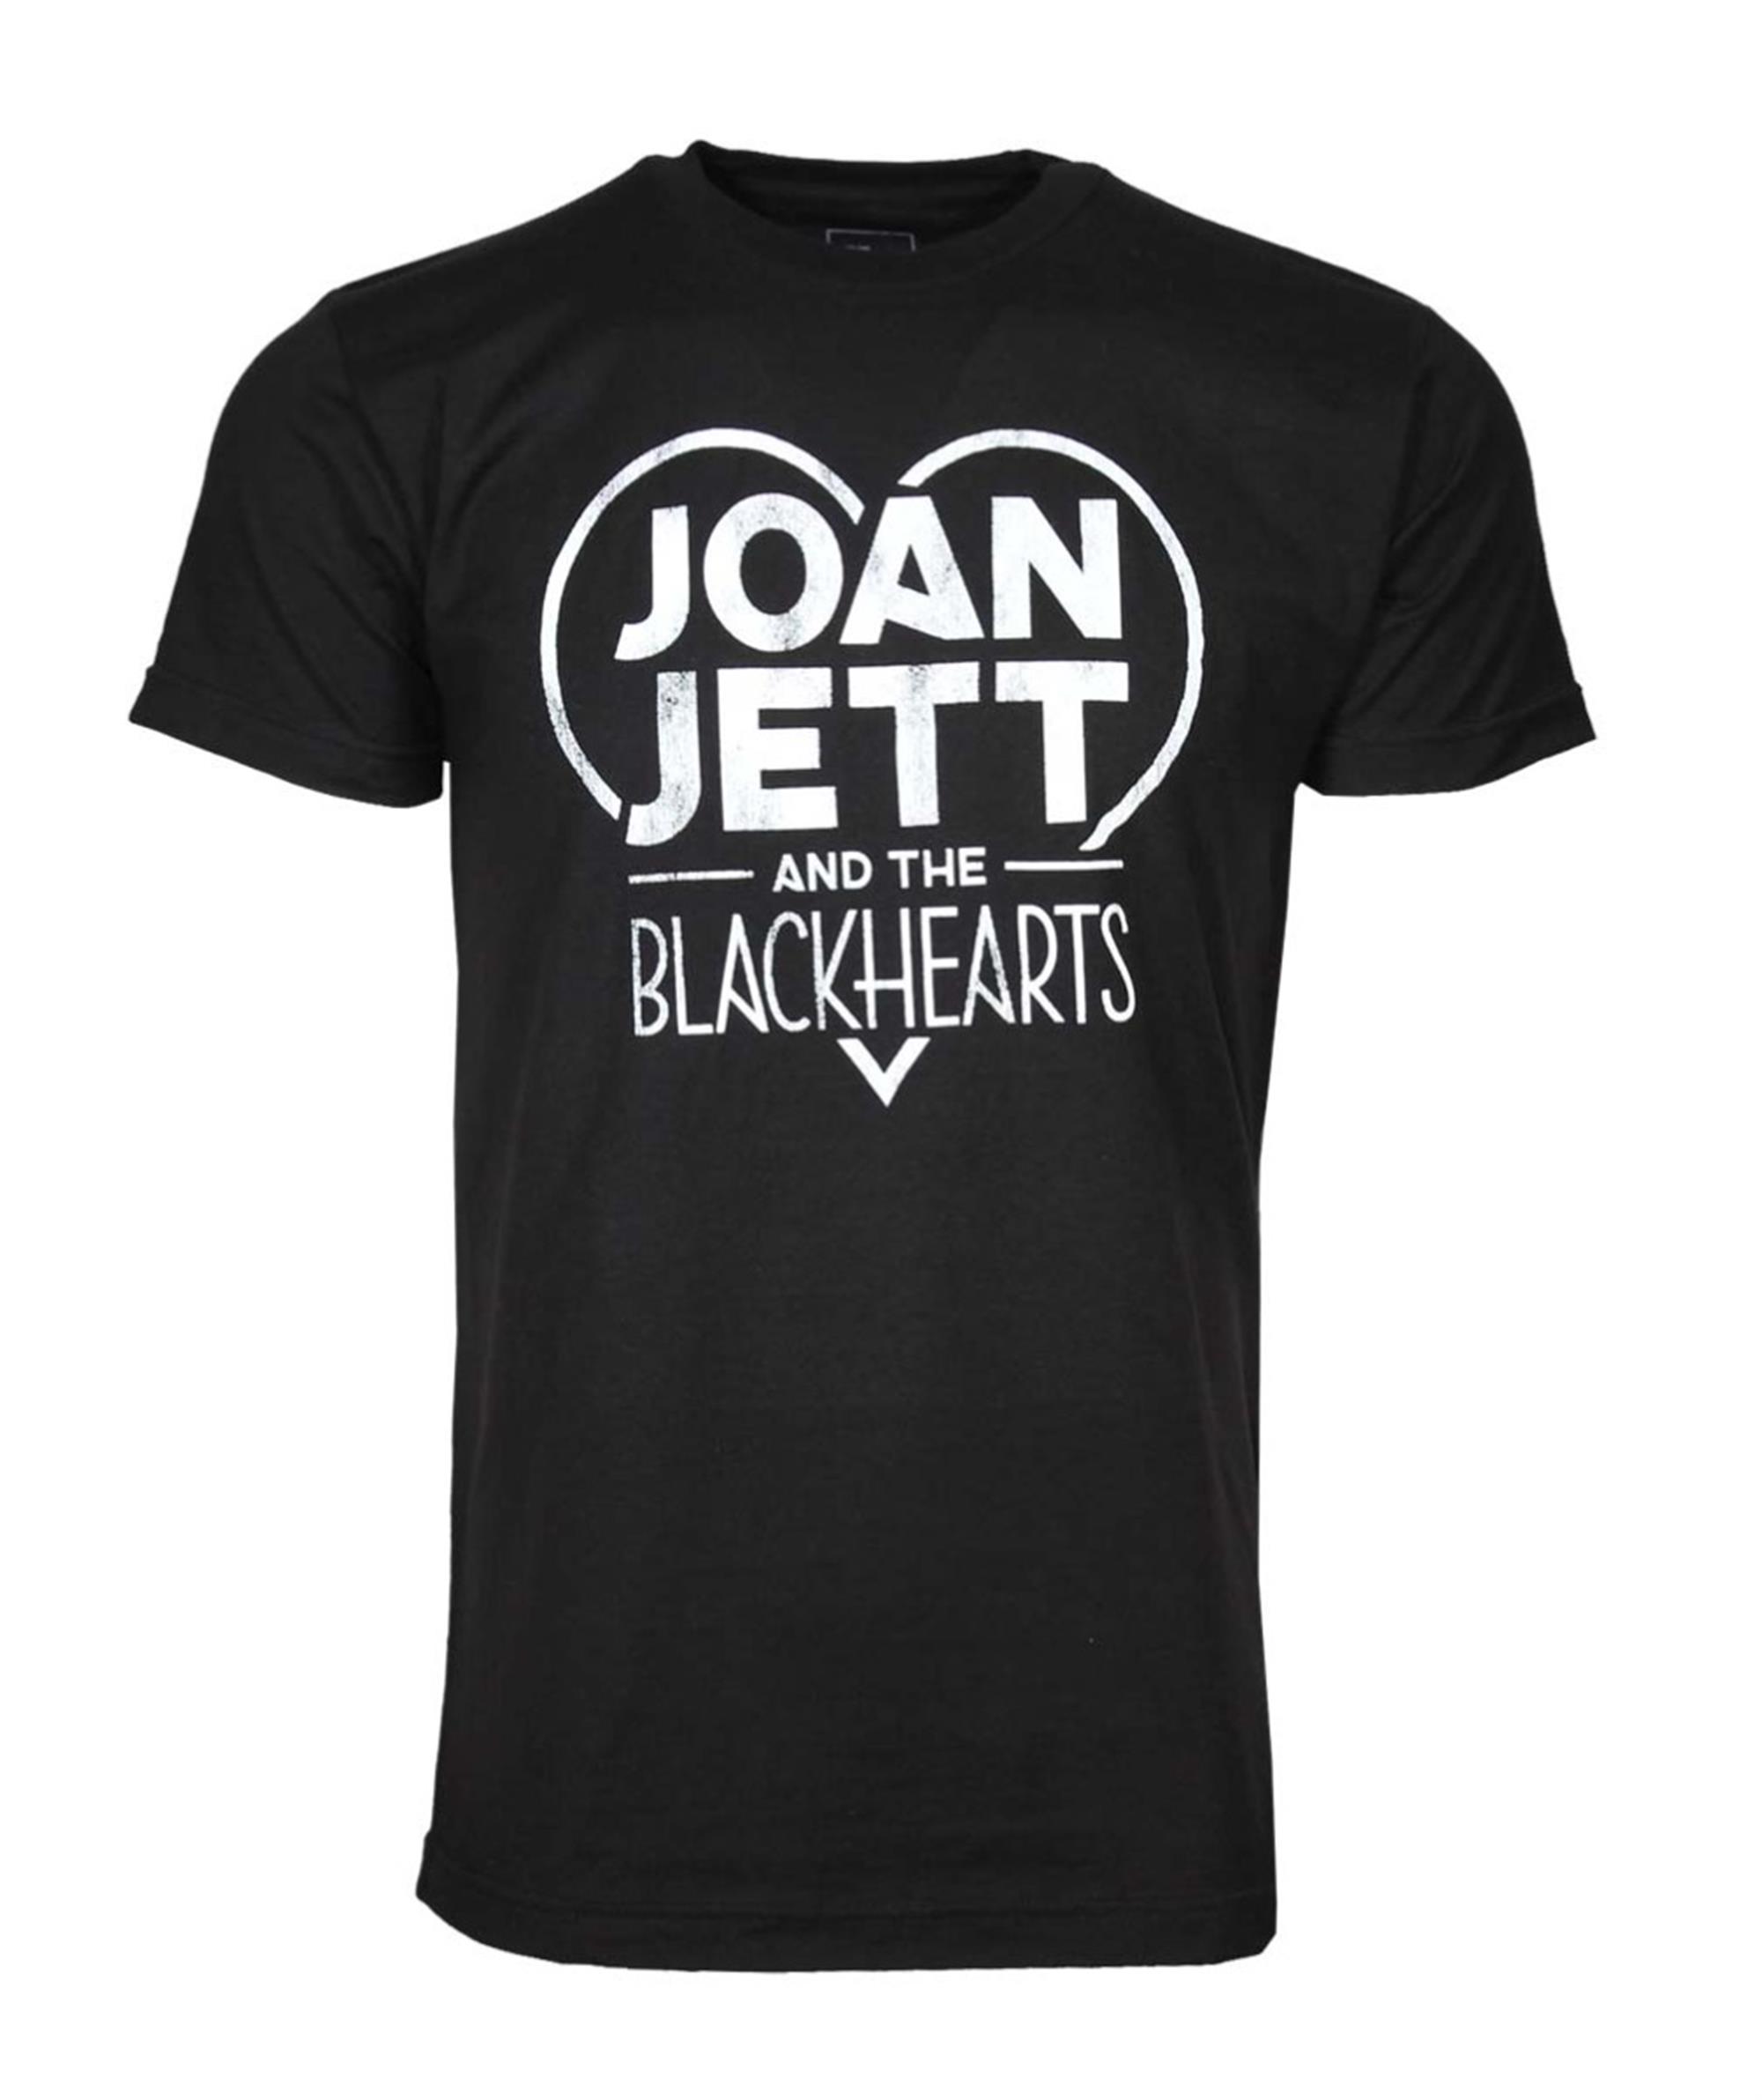 Joan Jett and the Blackhearts T-Shirt